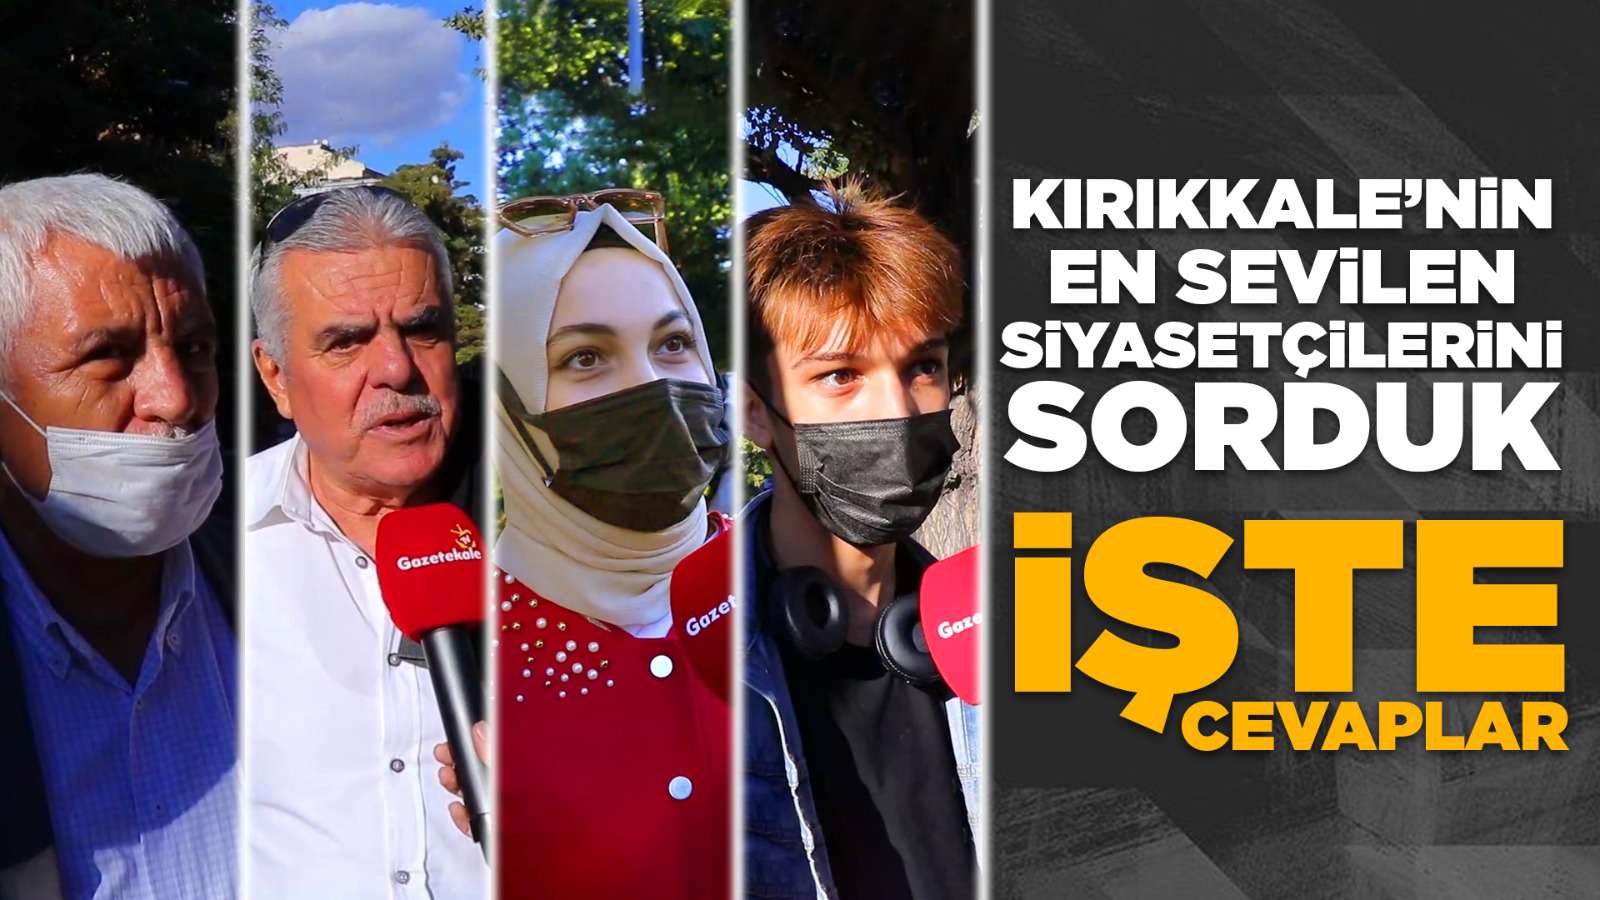 Kırıkkale'nin en sevilen siyasetçilerini sorduk! İşte cevaplar!